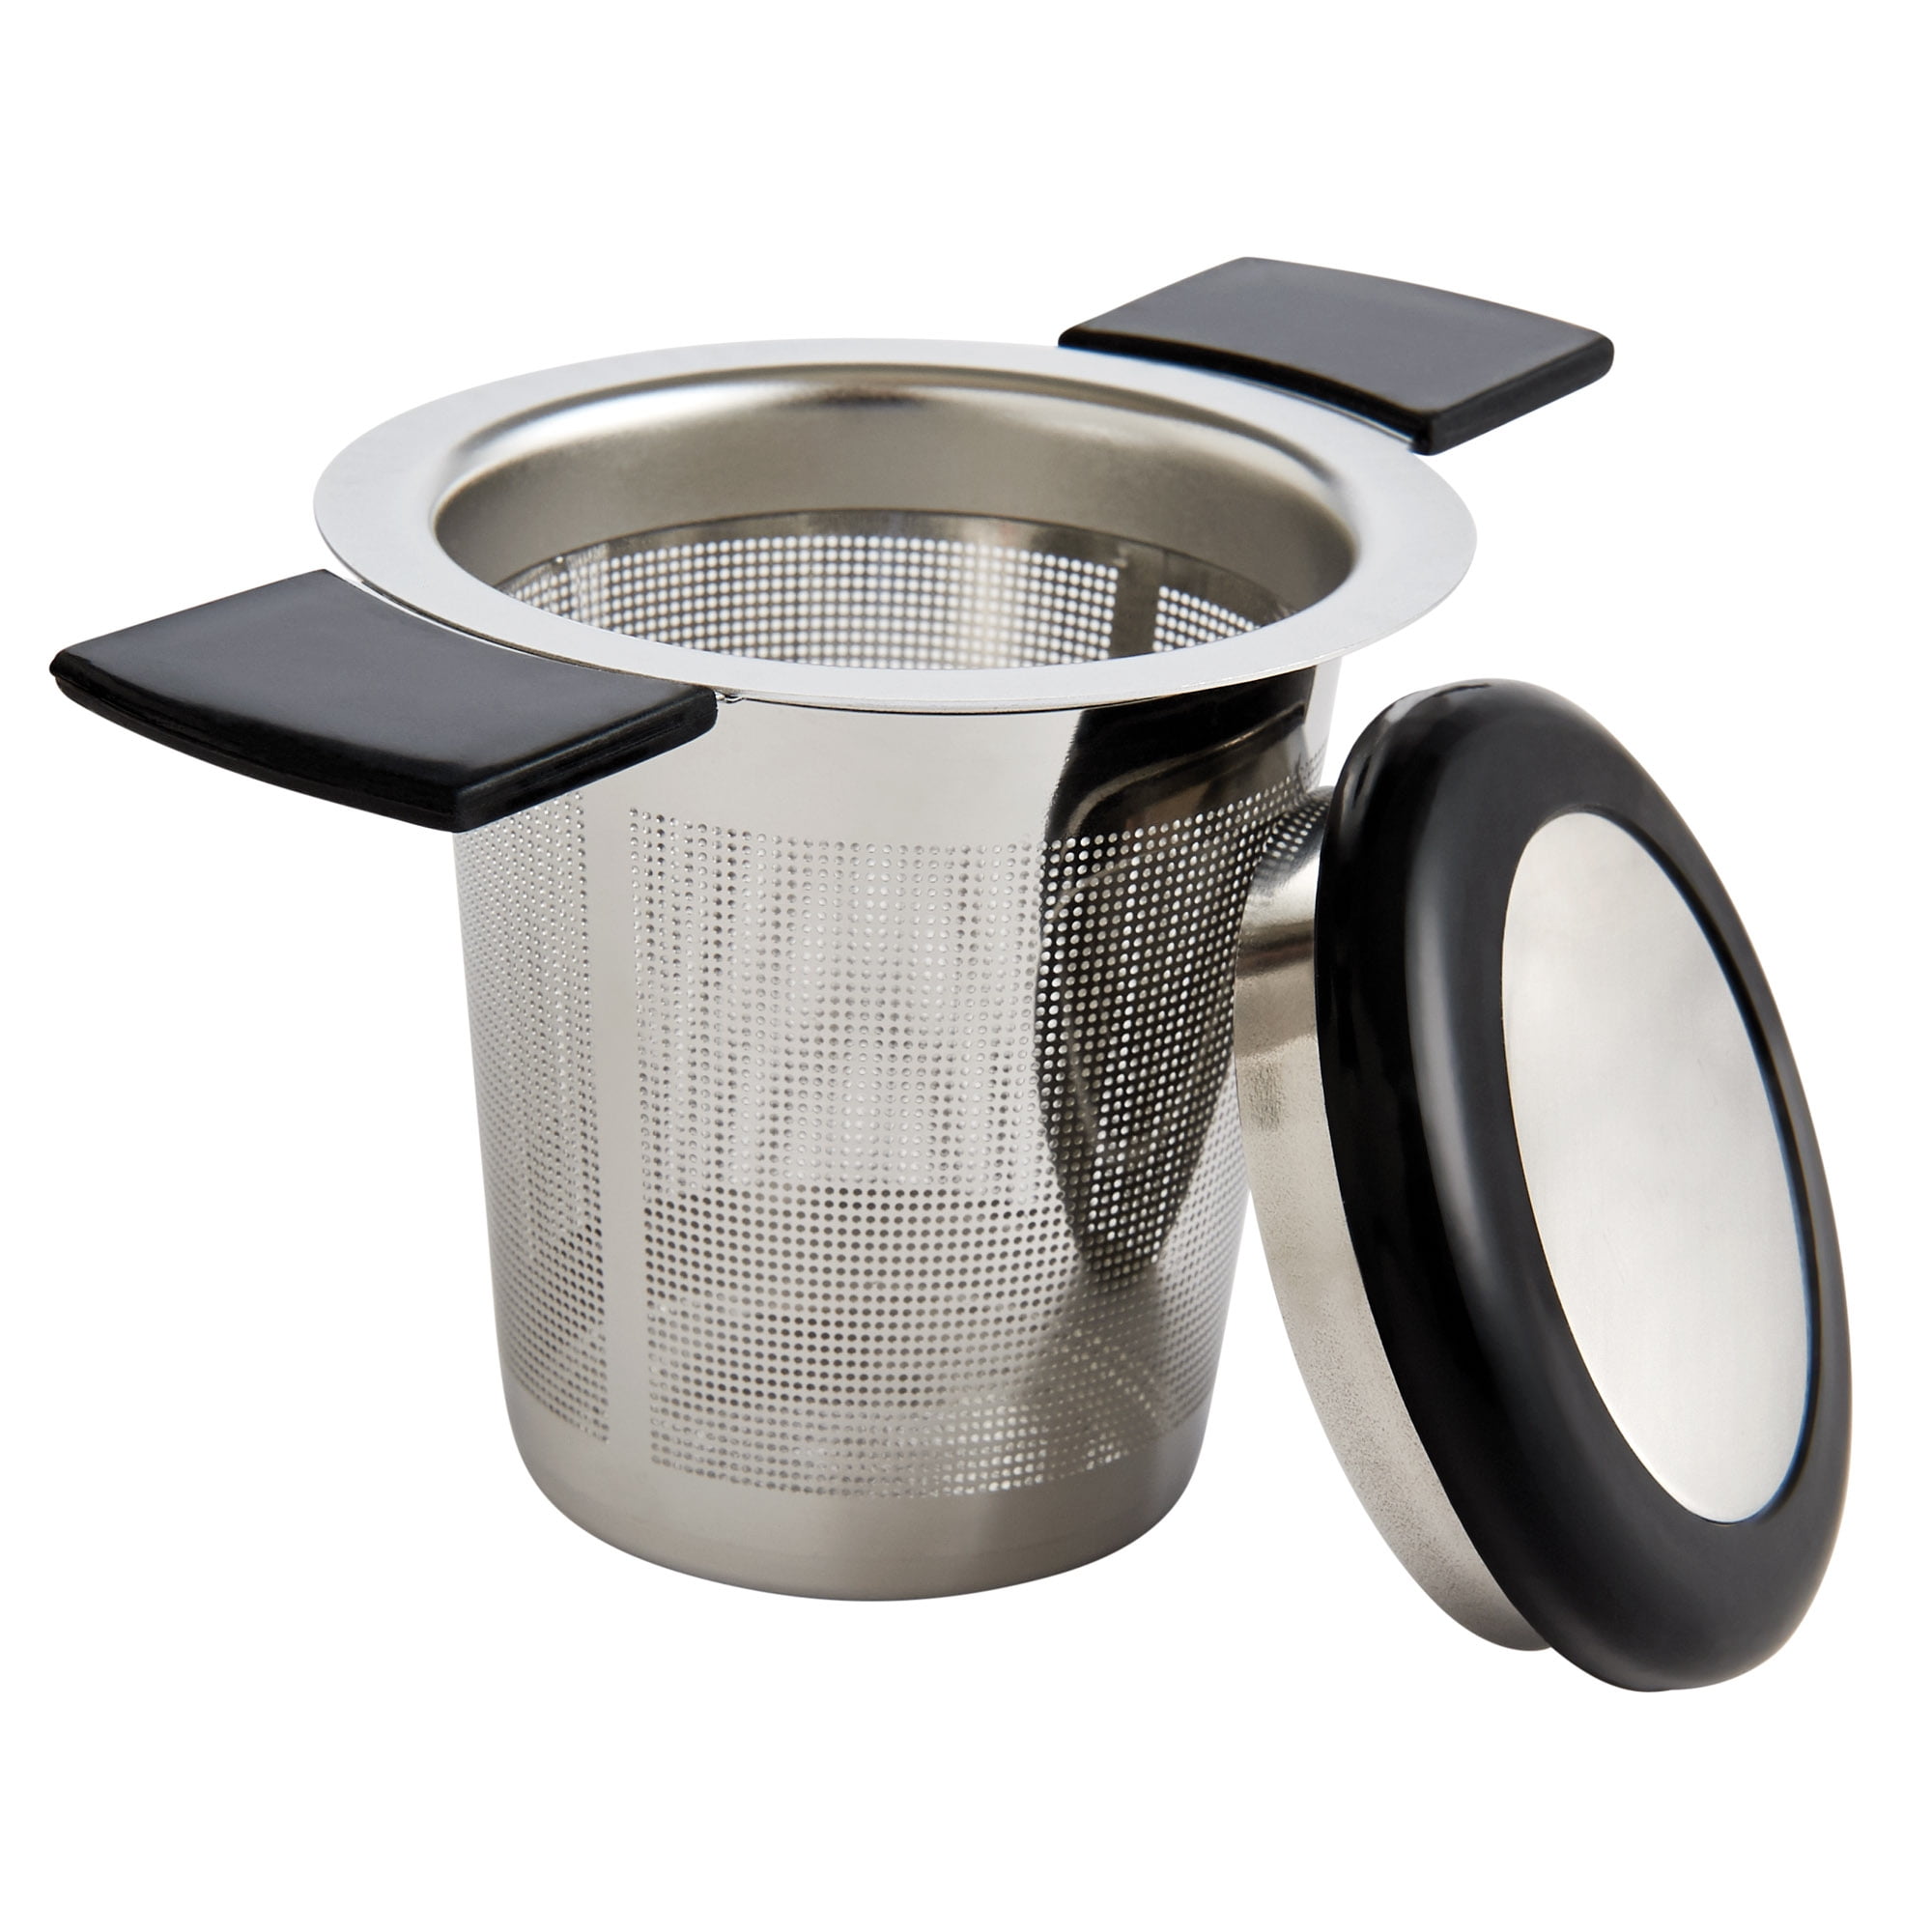 Kikkerland Monkey Loose Leaf Tea Infuser and Drip Tray Strainer Filter for sale online 